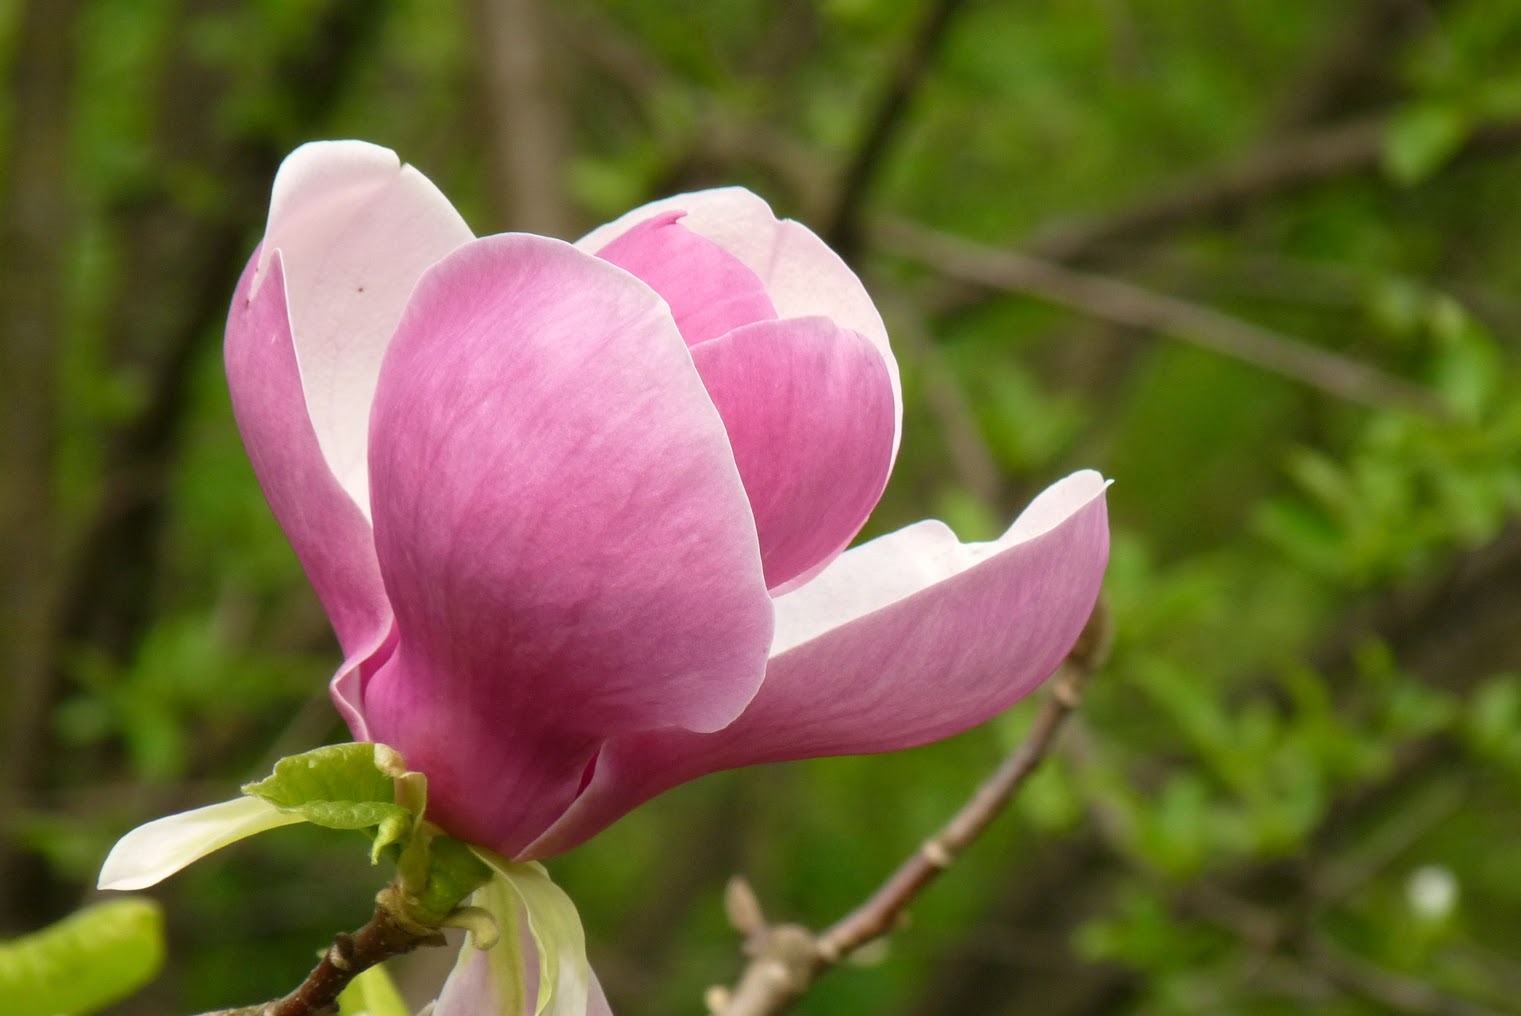 nalewka na kwiatach magnolii, nalewka na magnolii, nalewka z kwiatu magnolii, nalewka z magnolii, 